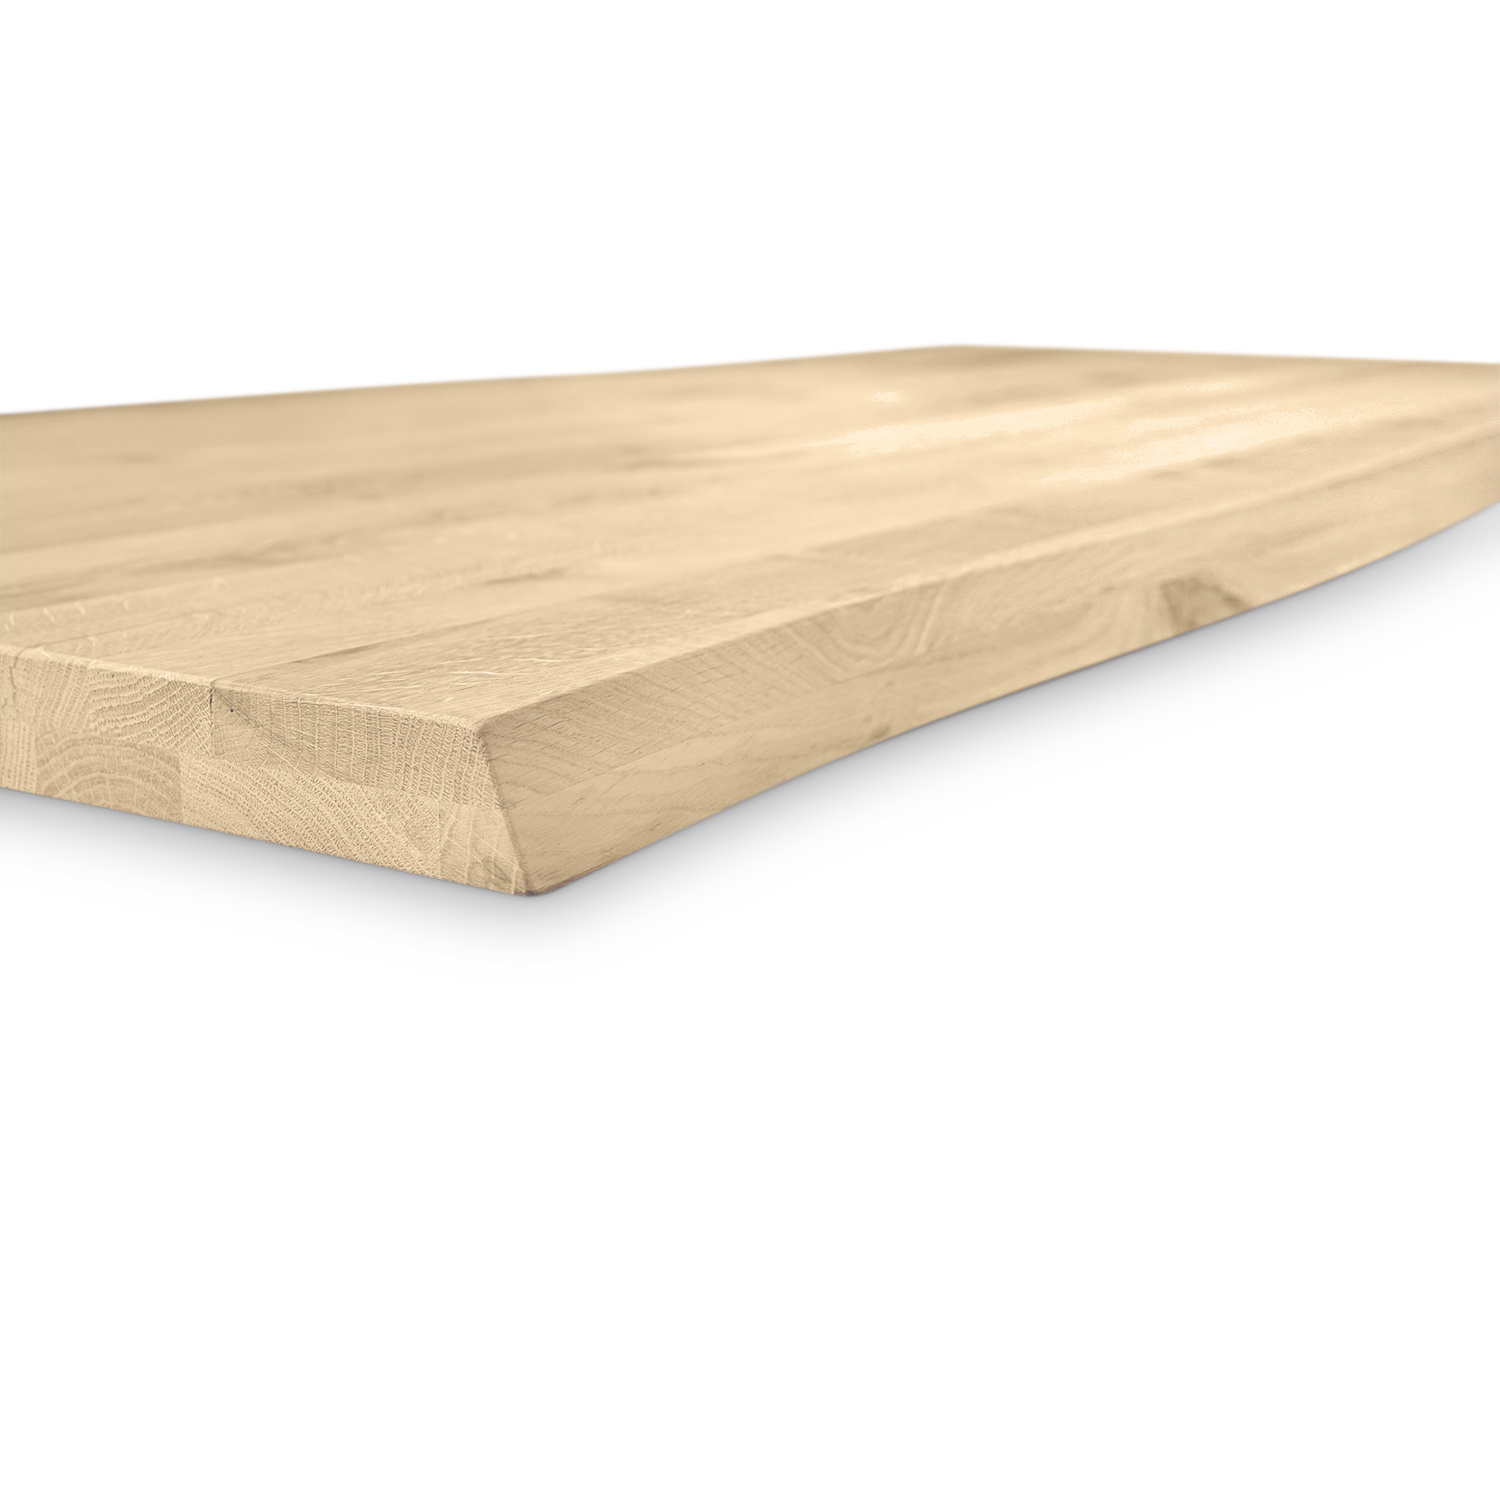  Eiken boomstam tafelblad op maat - 4 cm dik (2-laags)  - met boomstam rand / waankant LOOK -  rustiek Europees eikenhout - verlijmd kd 8-12% - 50-120x50-350 cm